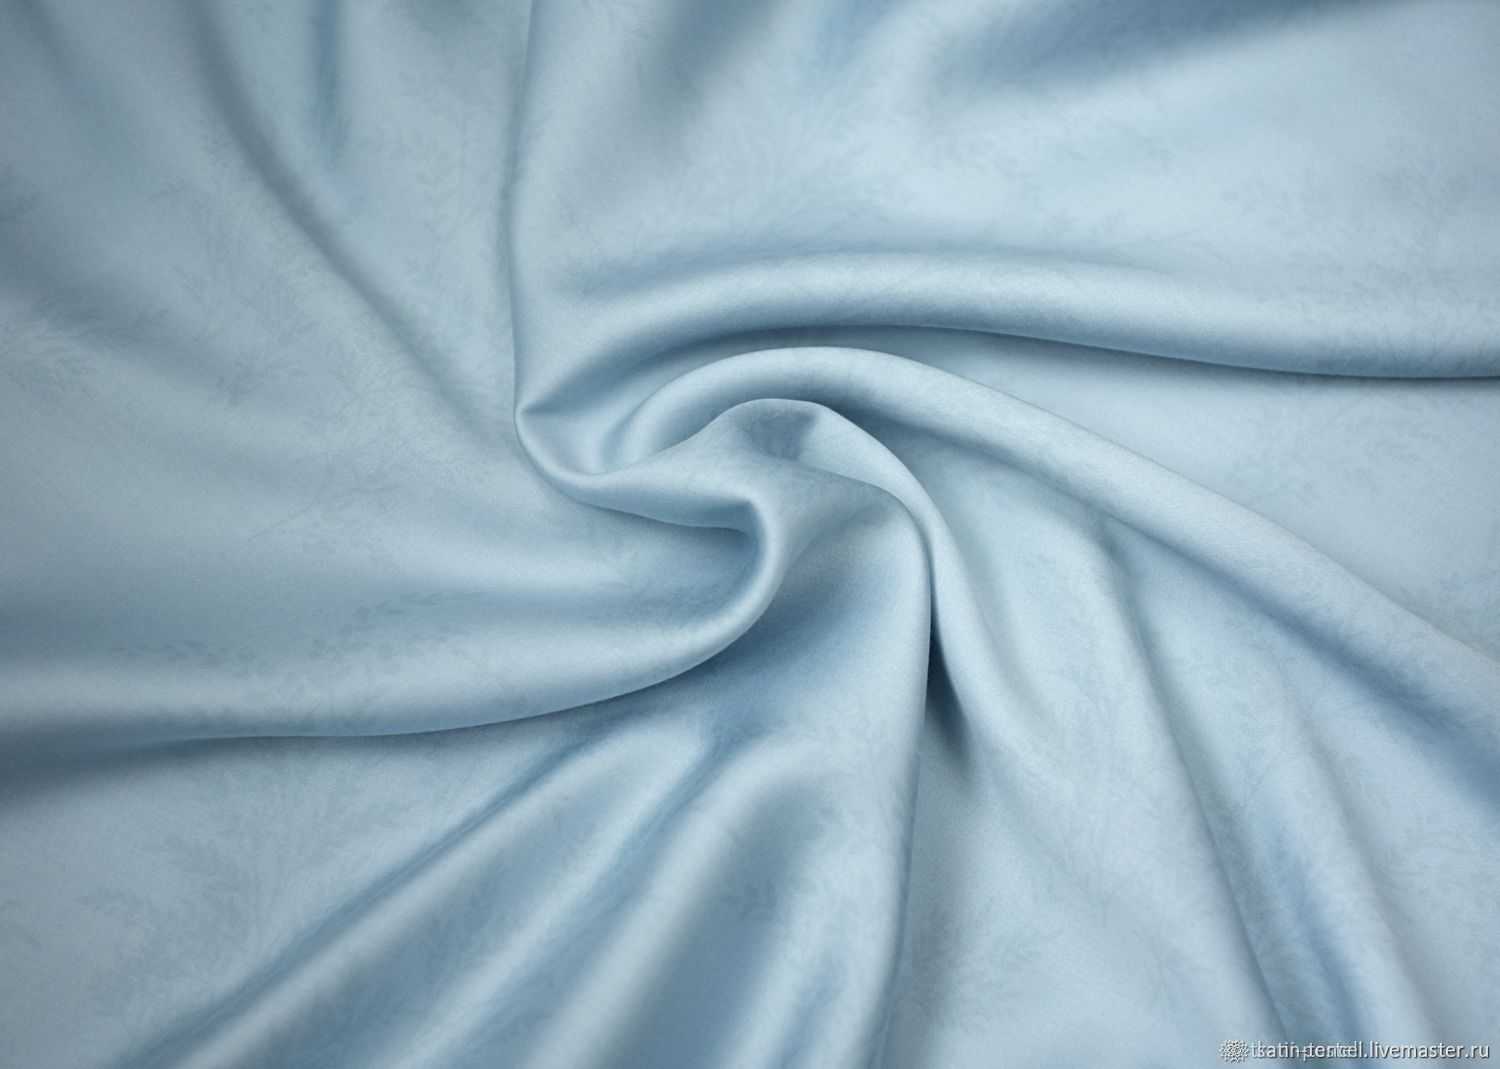 Ткань тенсель – новейший материал из волокон эвкалипт, уникальный своими антибактериальными свойствами Из него изготавливают одежду, постельное белье, перевязочные материалы